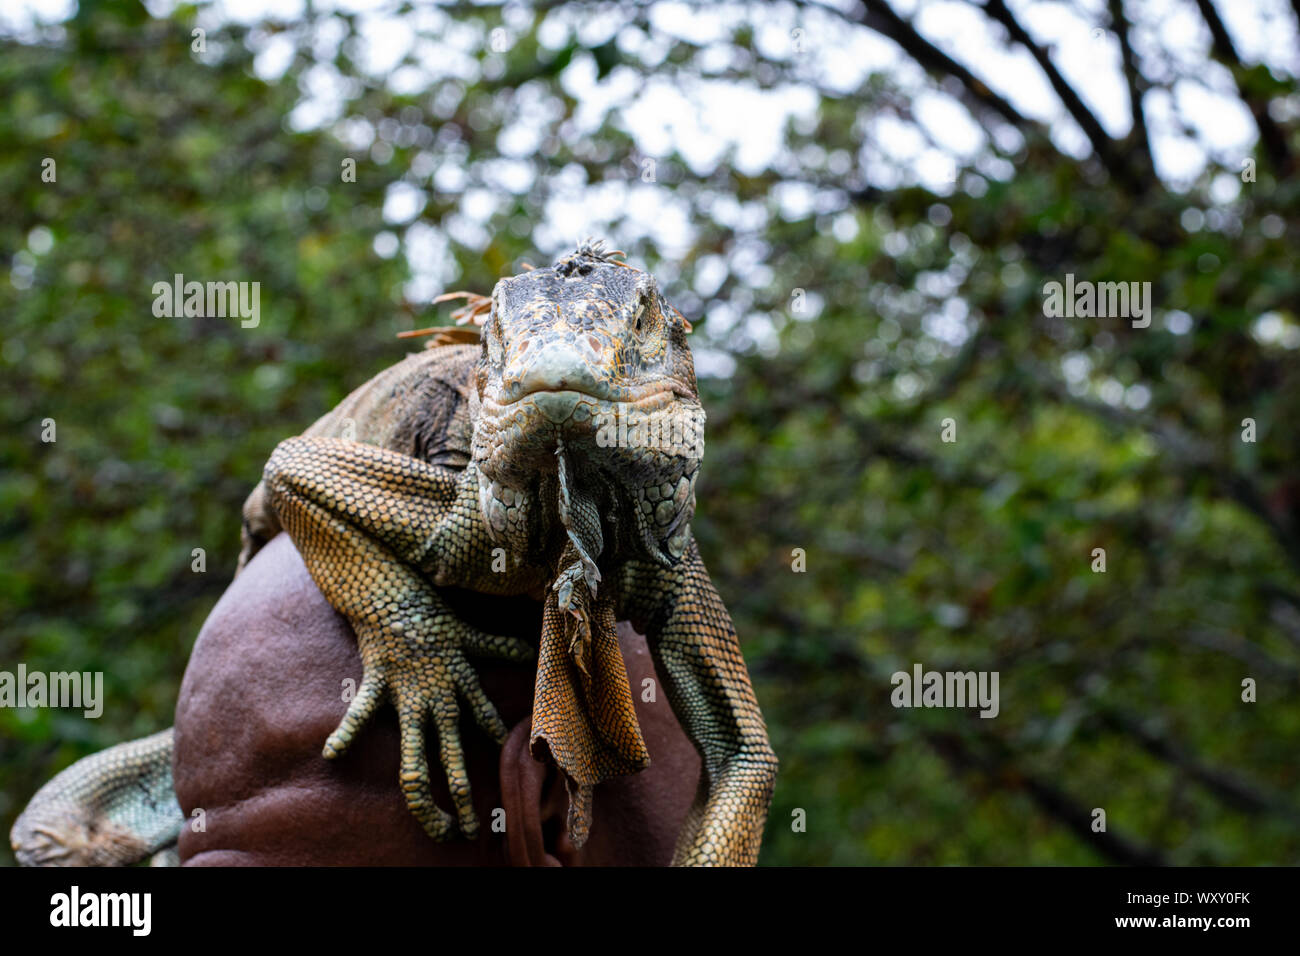 Ein Mann hat sich einen Leguan auf seinen Kopf und damit posiert gelegt vor der Kamera Banque D'Images